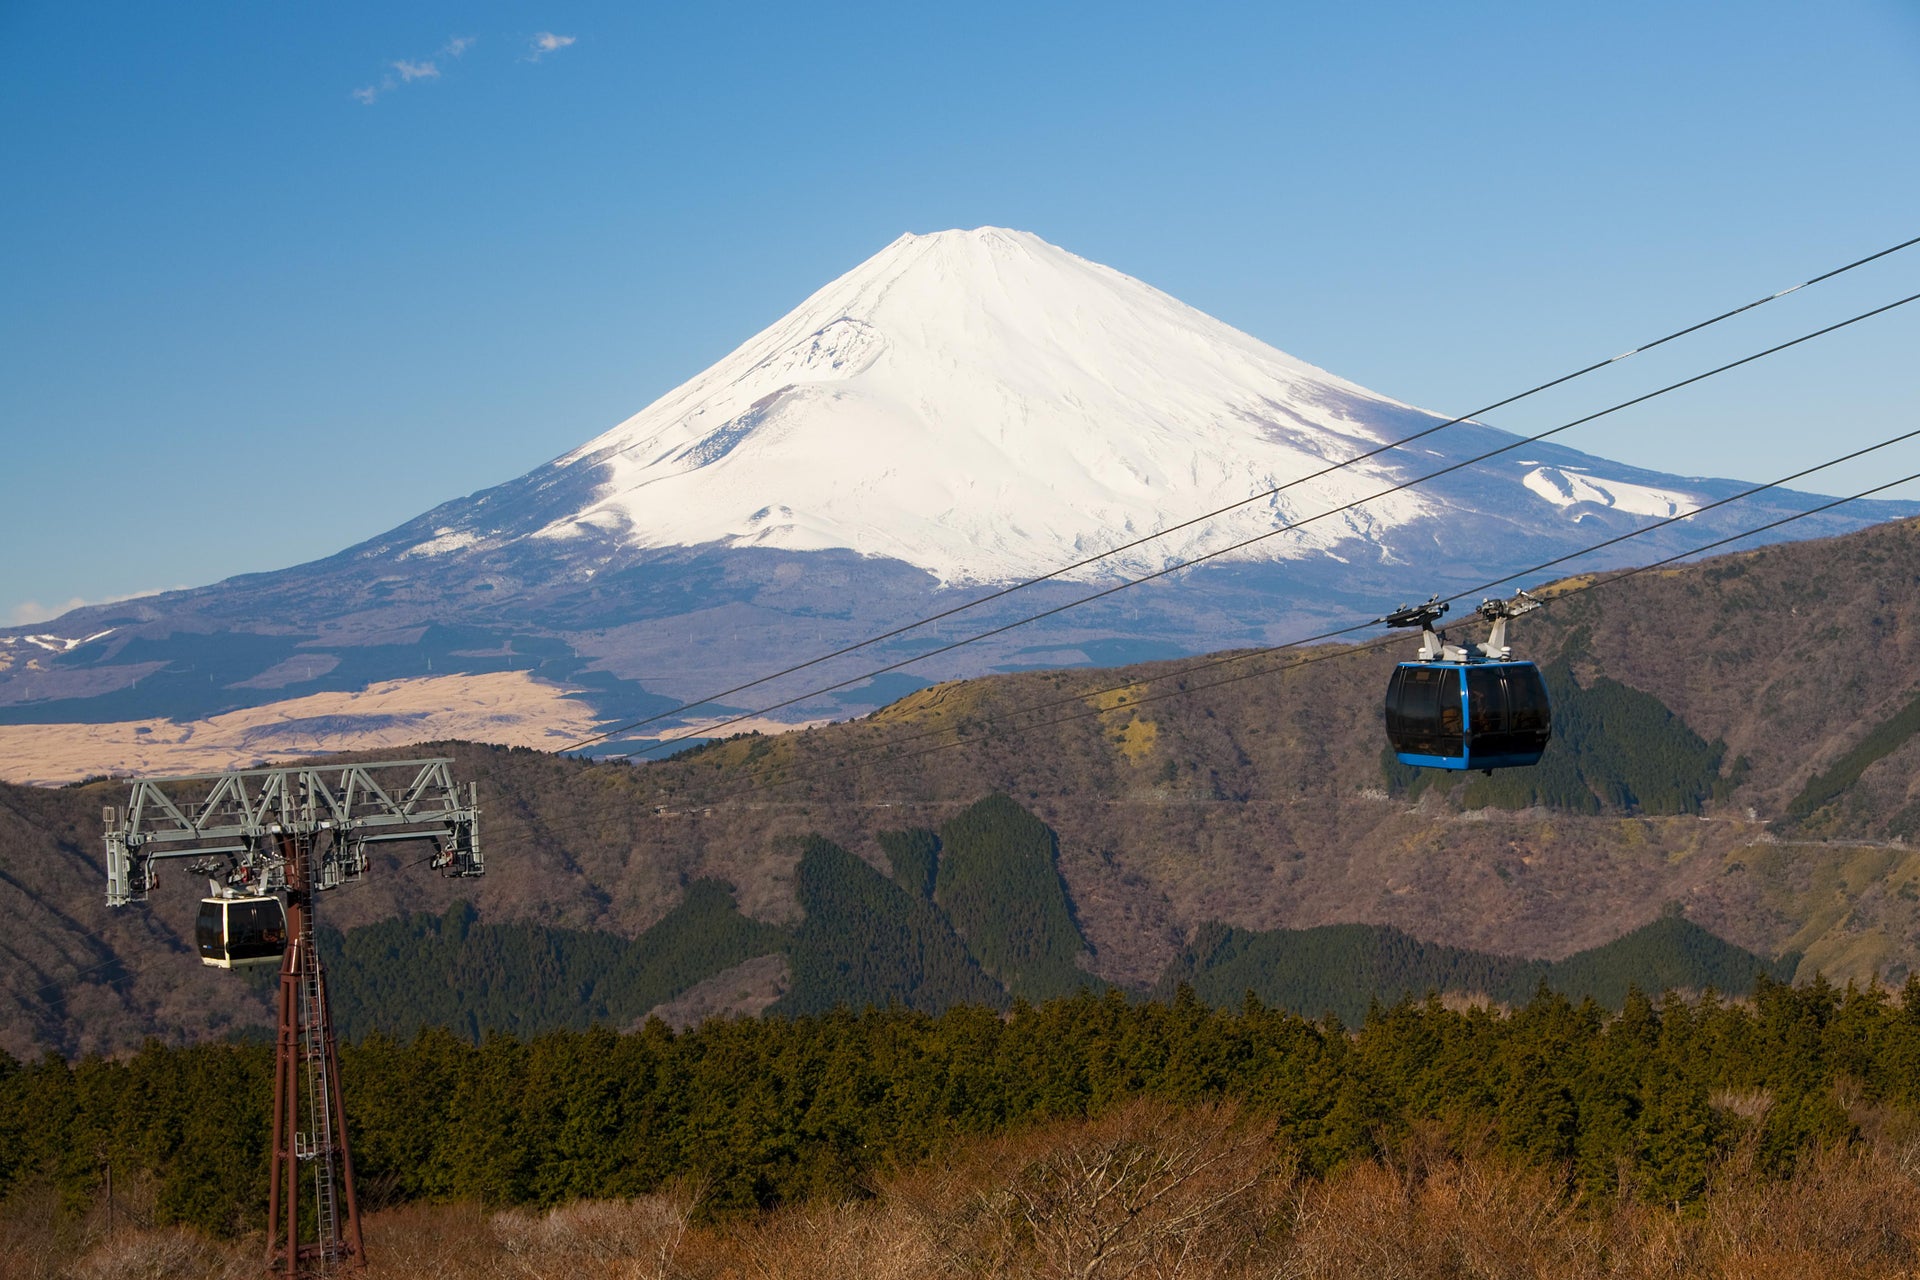 Excursion à Hakone et au belvédère du Mont Fuji